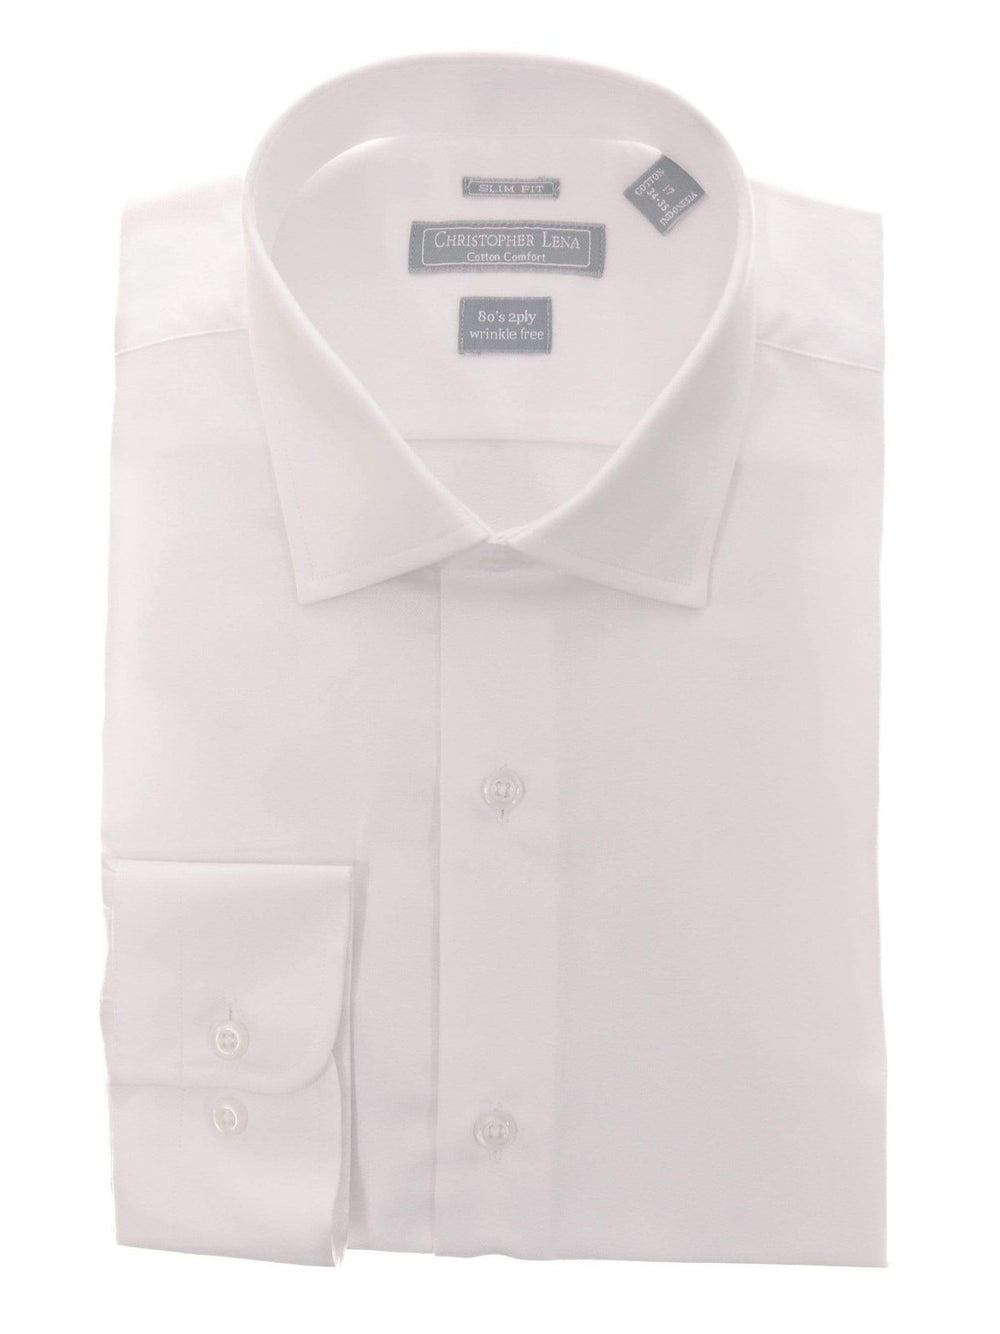 Men's Dress Shirts - Cutaway Collar Shirts | The Suit Depot